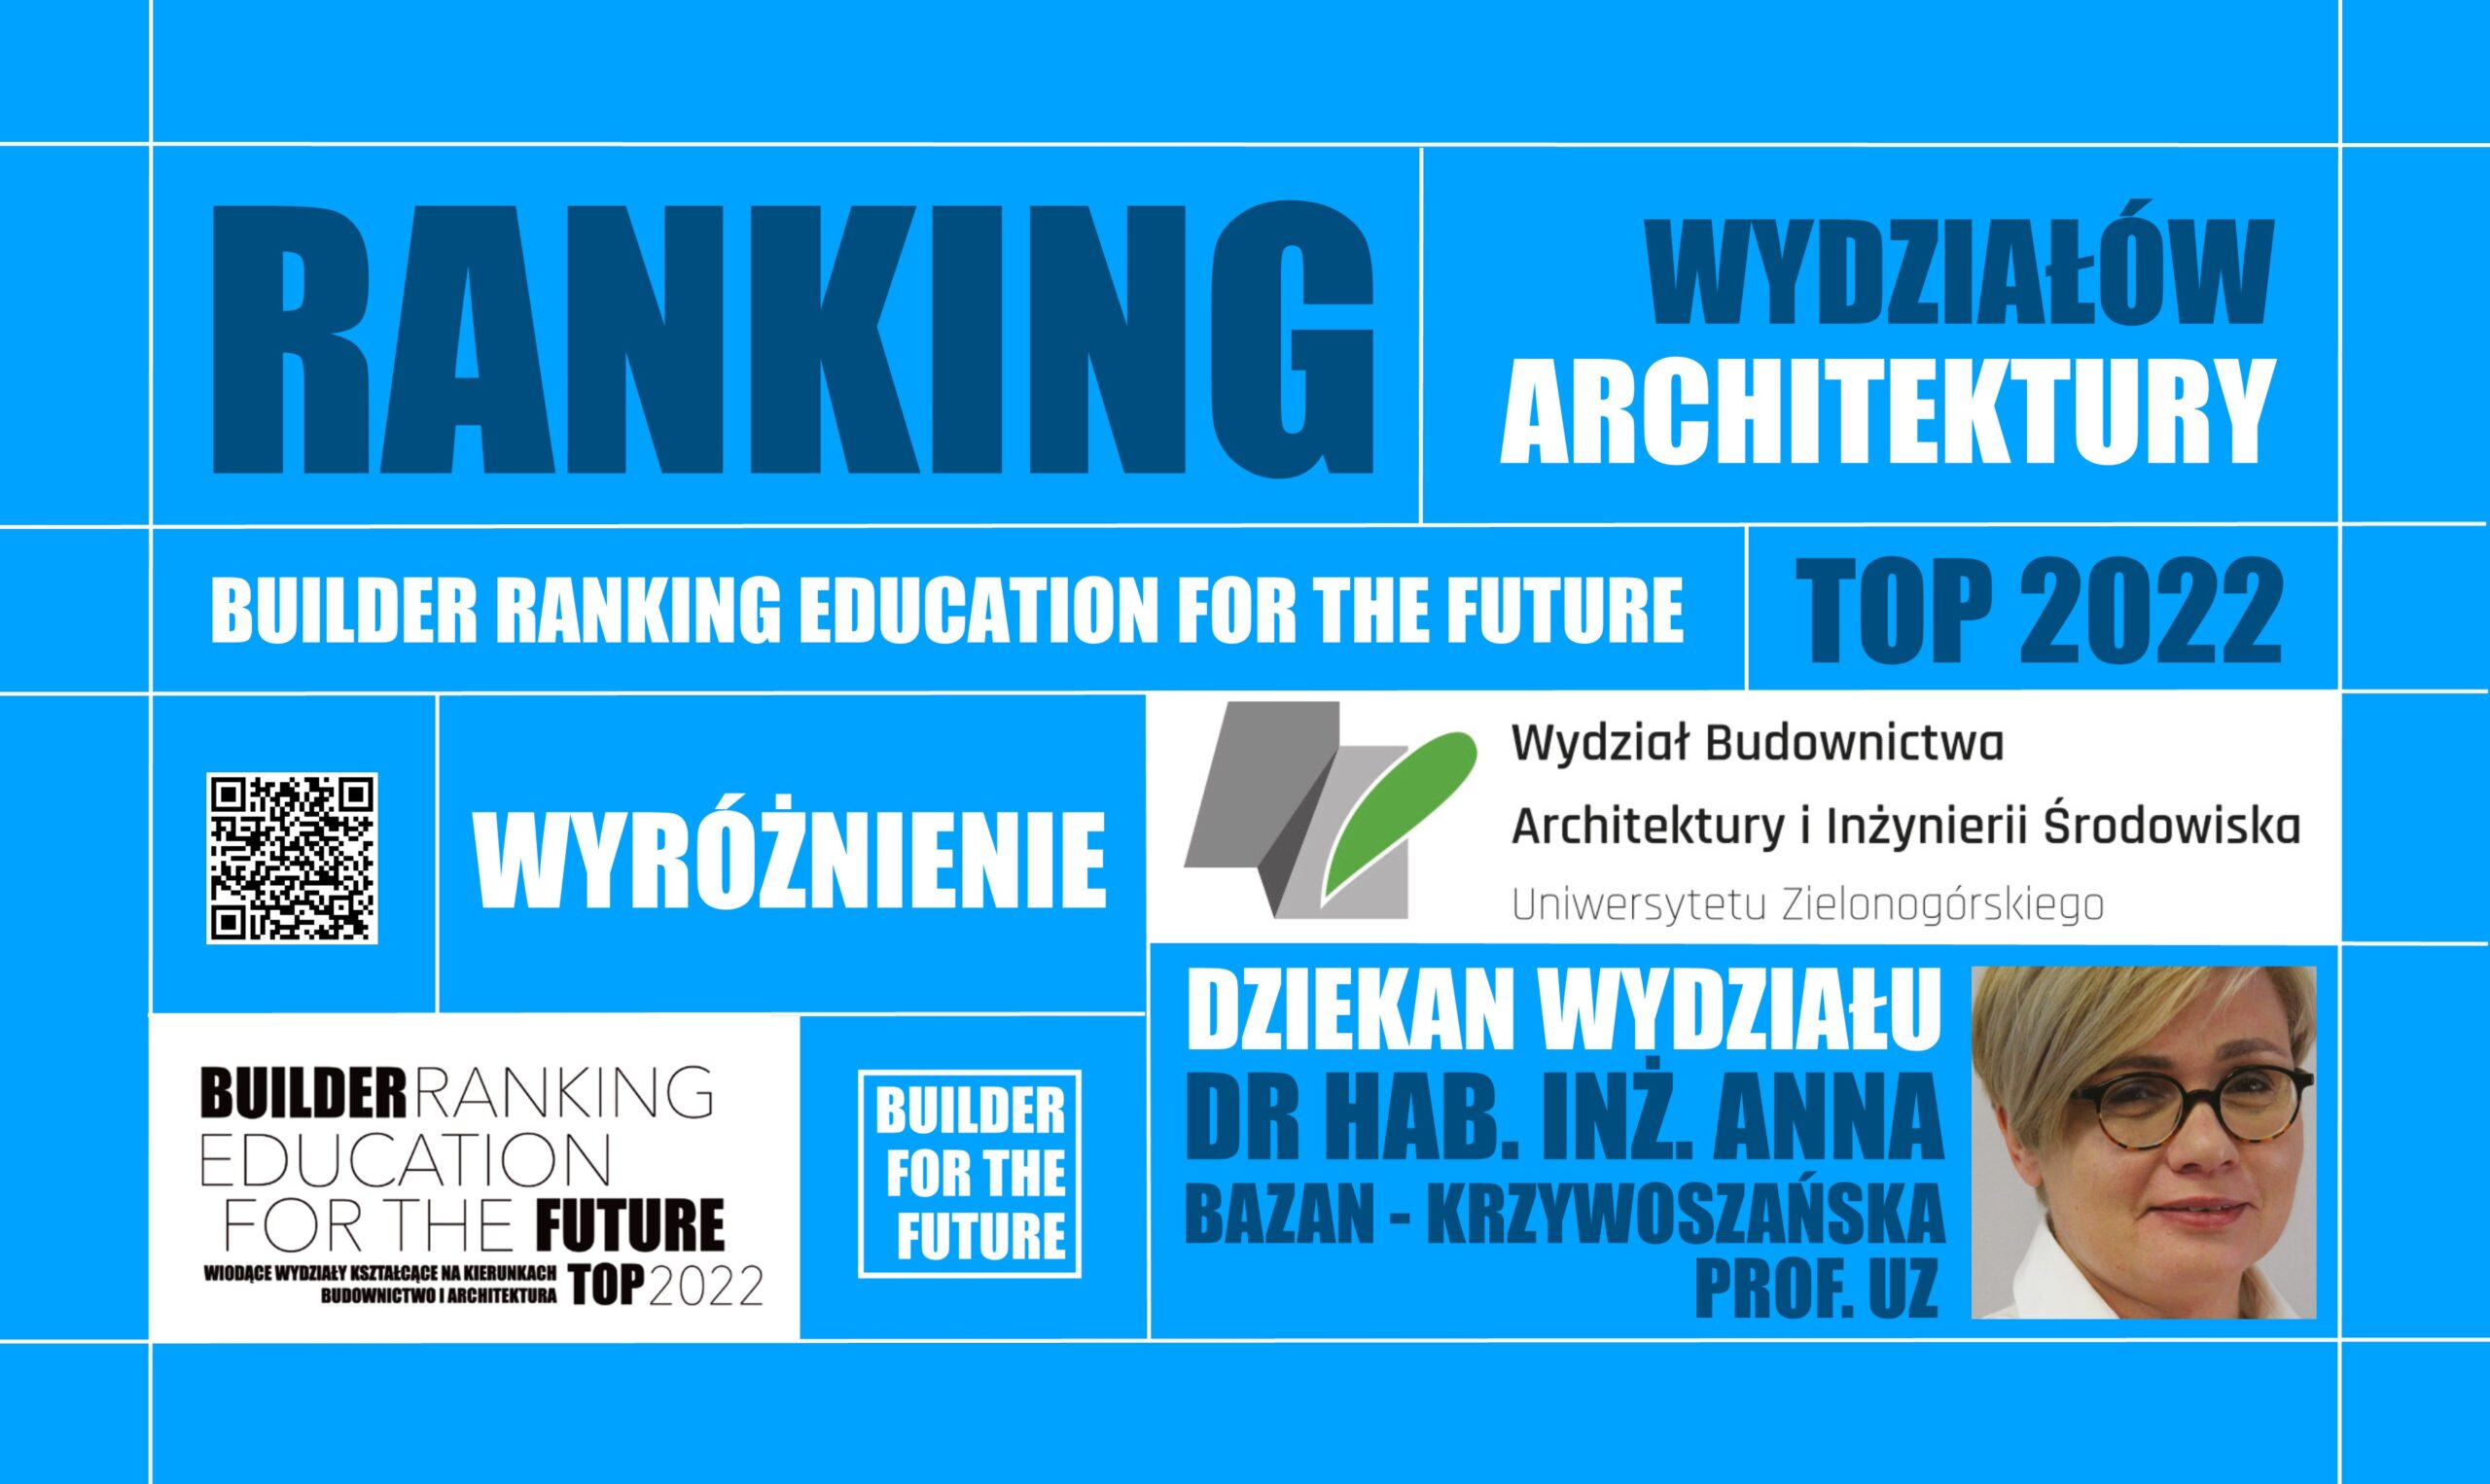 WYRÓŻNIENIE W RANKINGU WYDZIAŁÓW ARCHITEKTURY – BUILDER RANKING EDUCATION FOR THE FUTURE TOP 2022